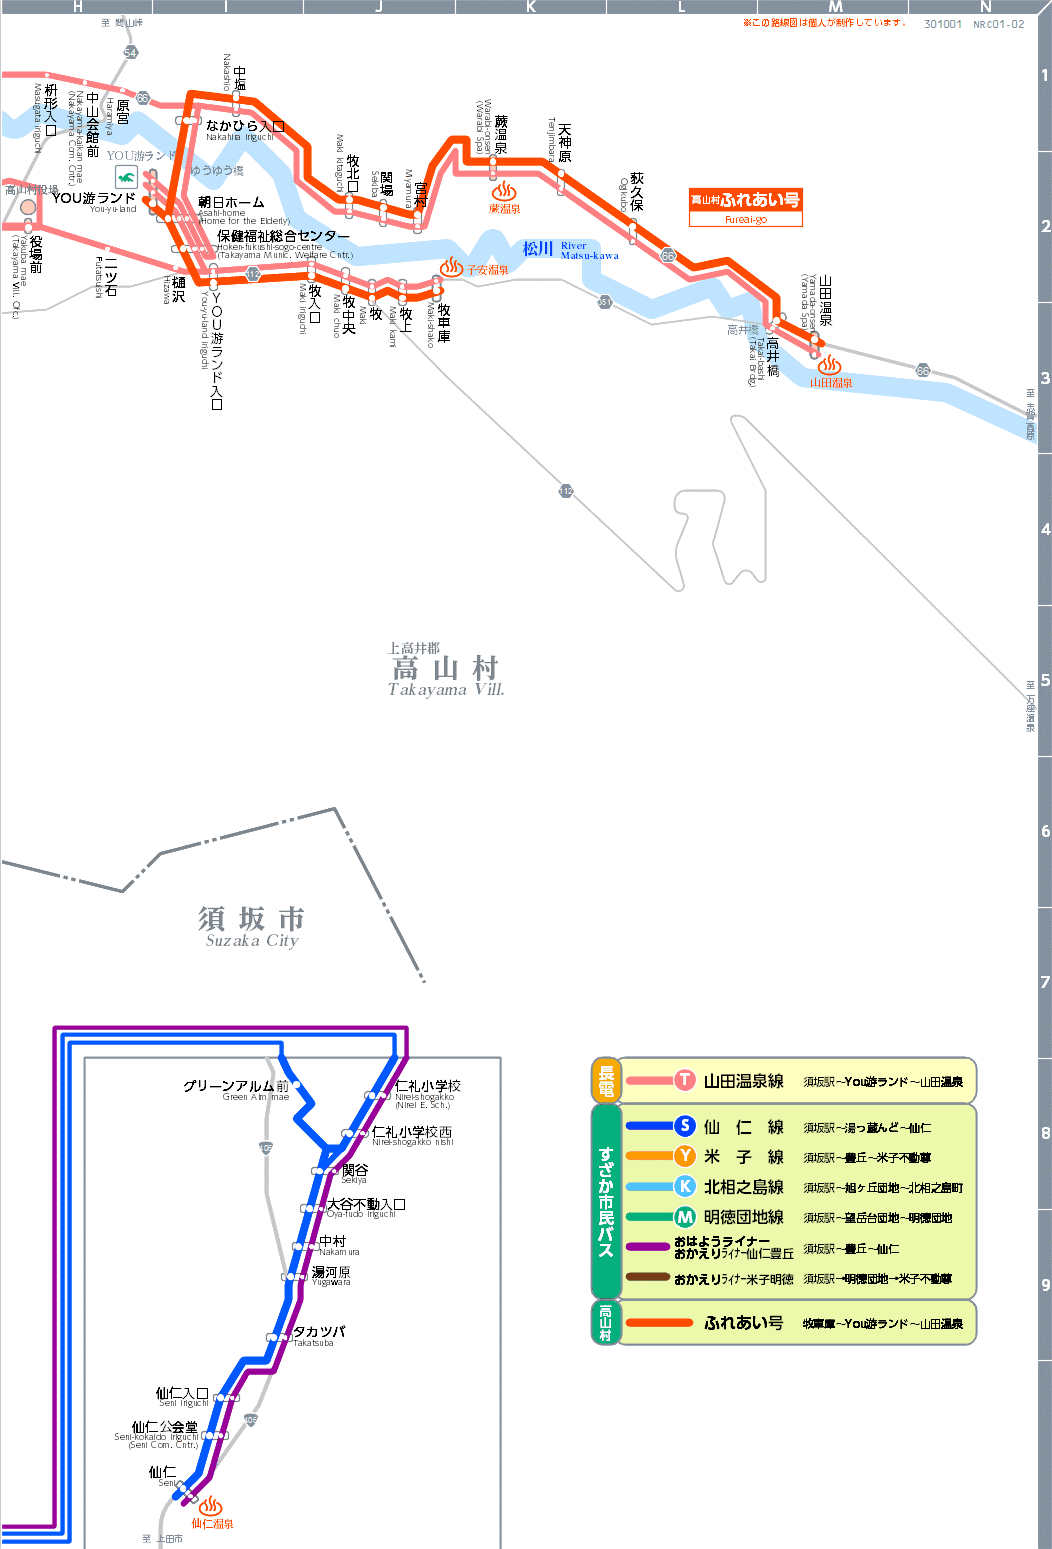 路線図[NRC01-02]